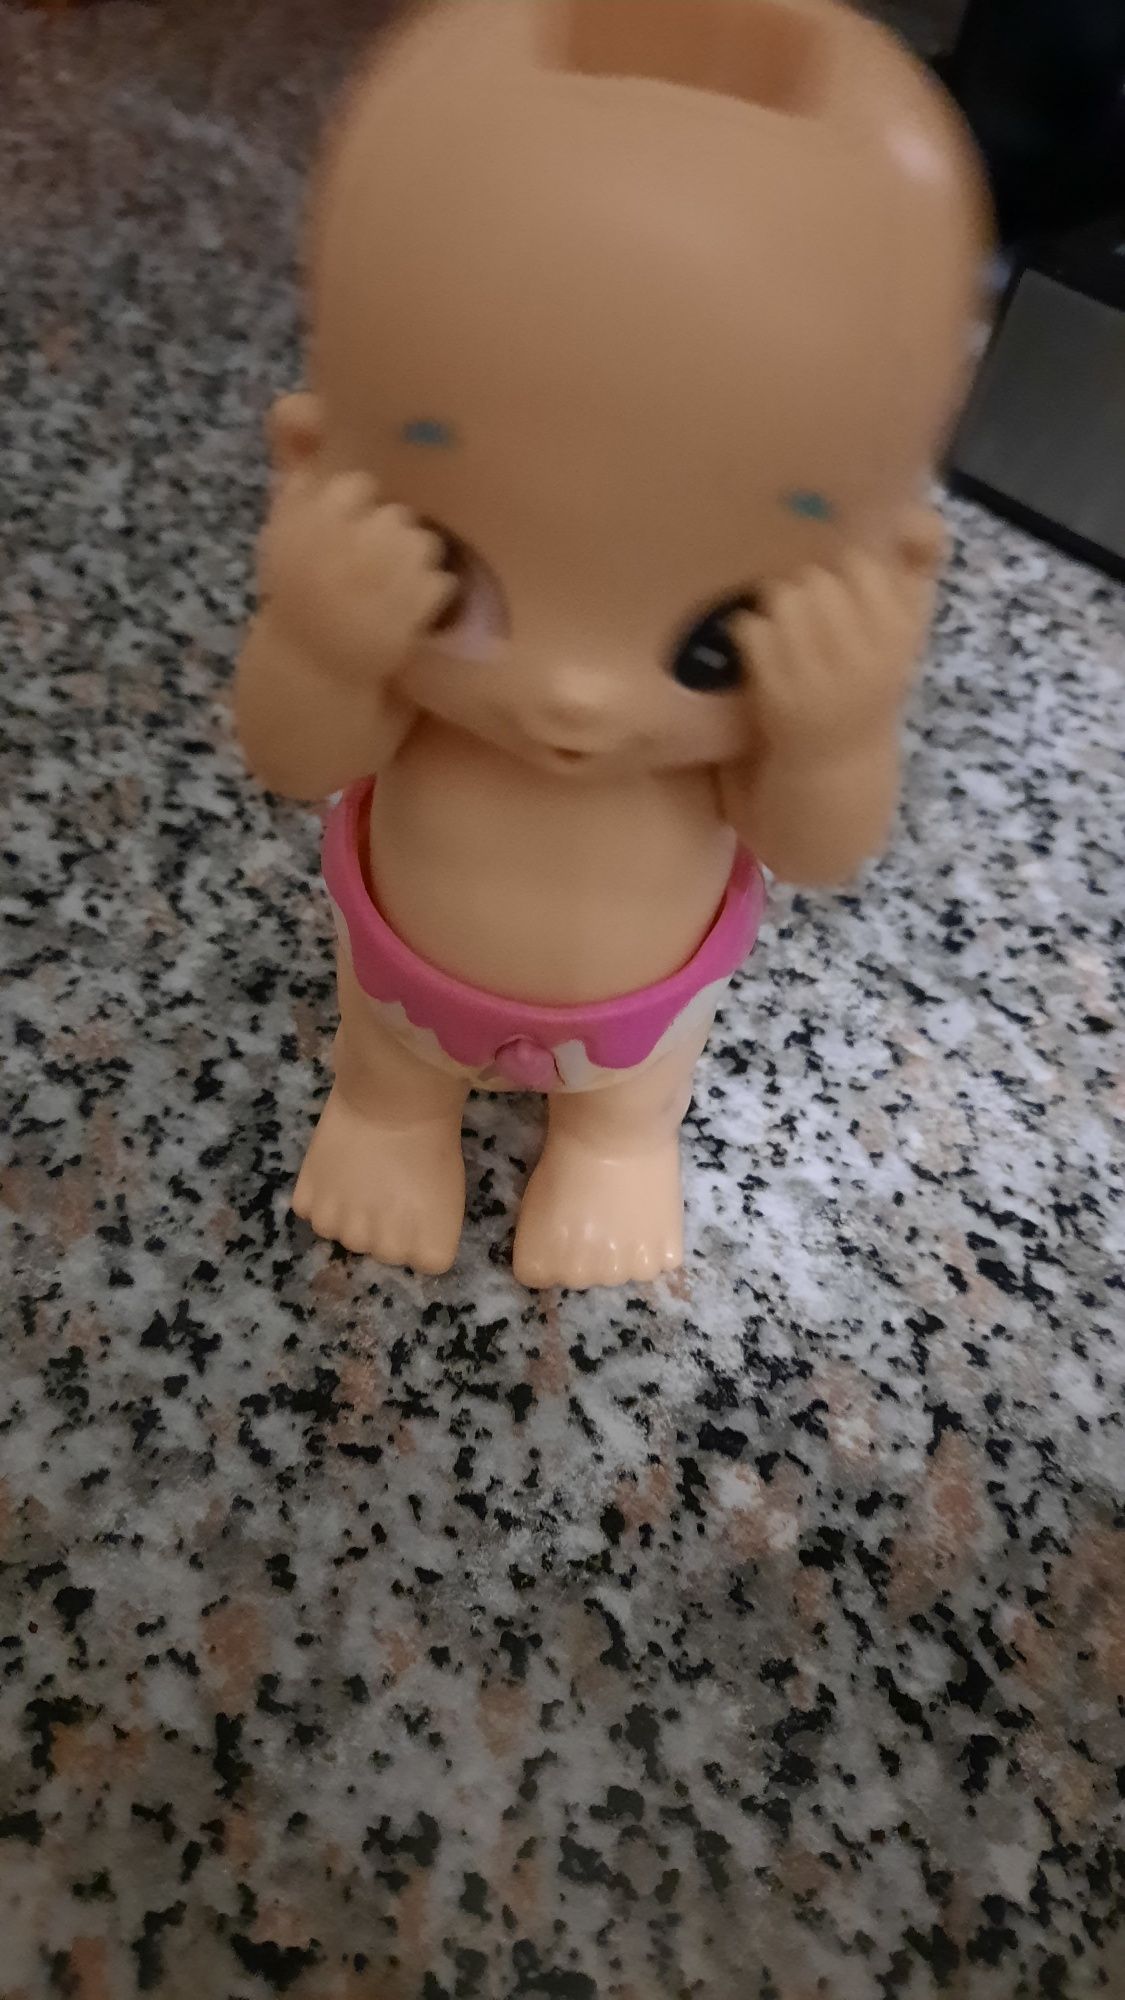 Інтерактивна іграшка малюк Мооse Bizzy bubs Swirlle грає у хованки